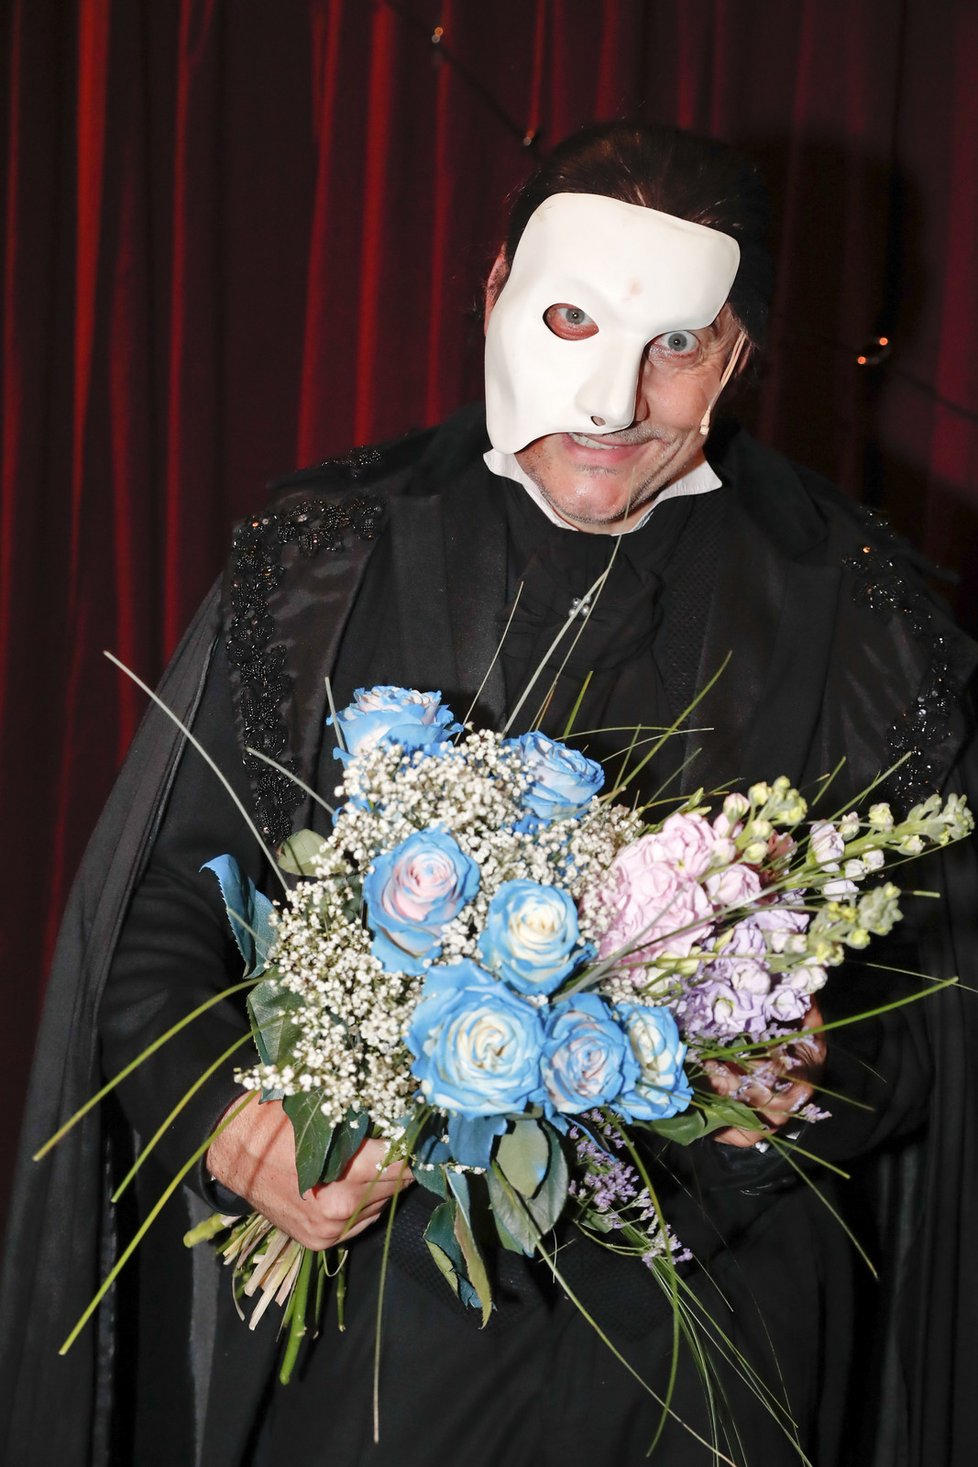 Marianovi Vojtkovi uspořádali kolegové z Fantoma Opery oslavu na jevišti